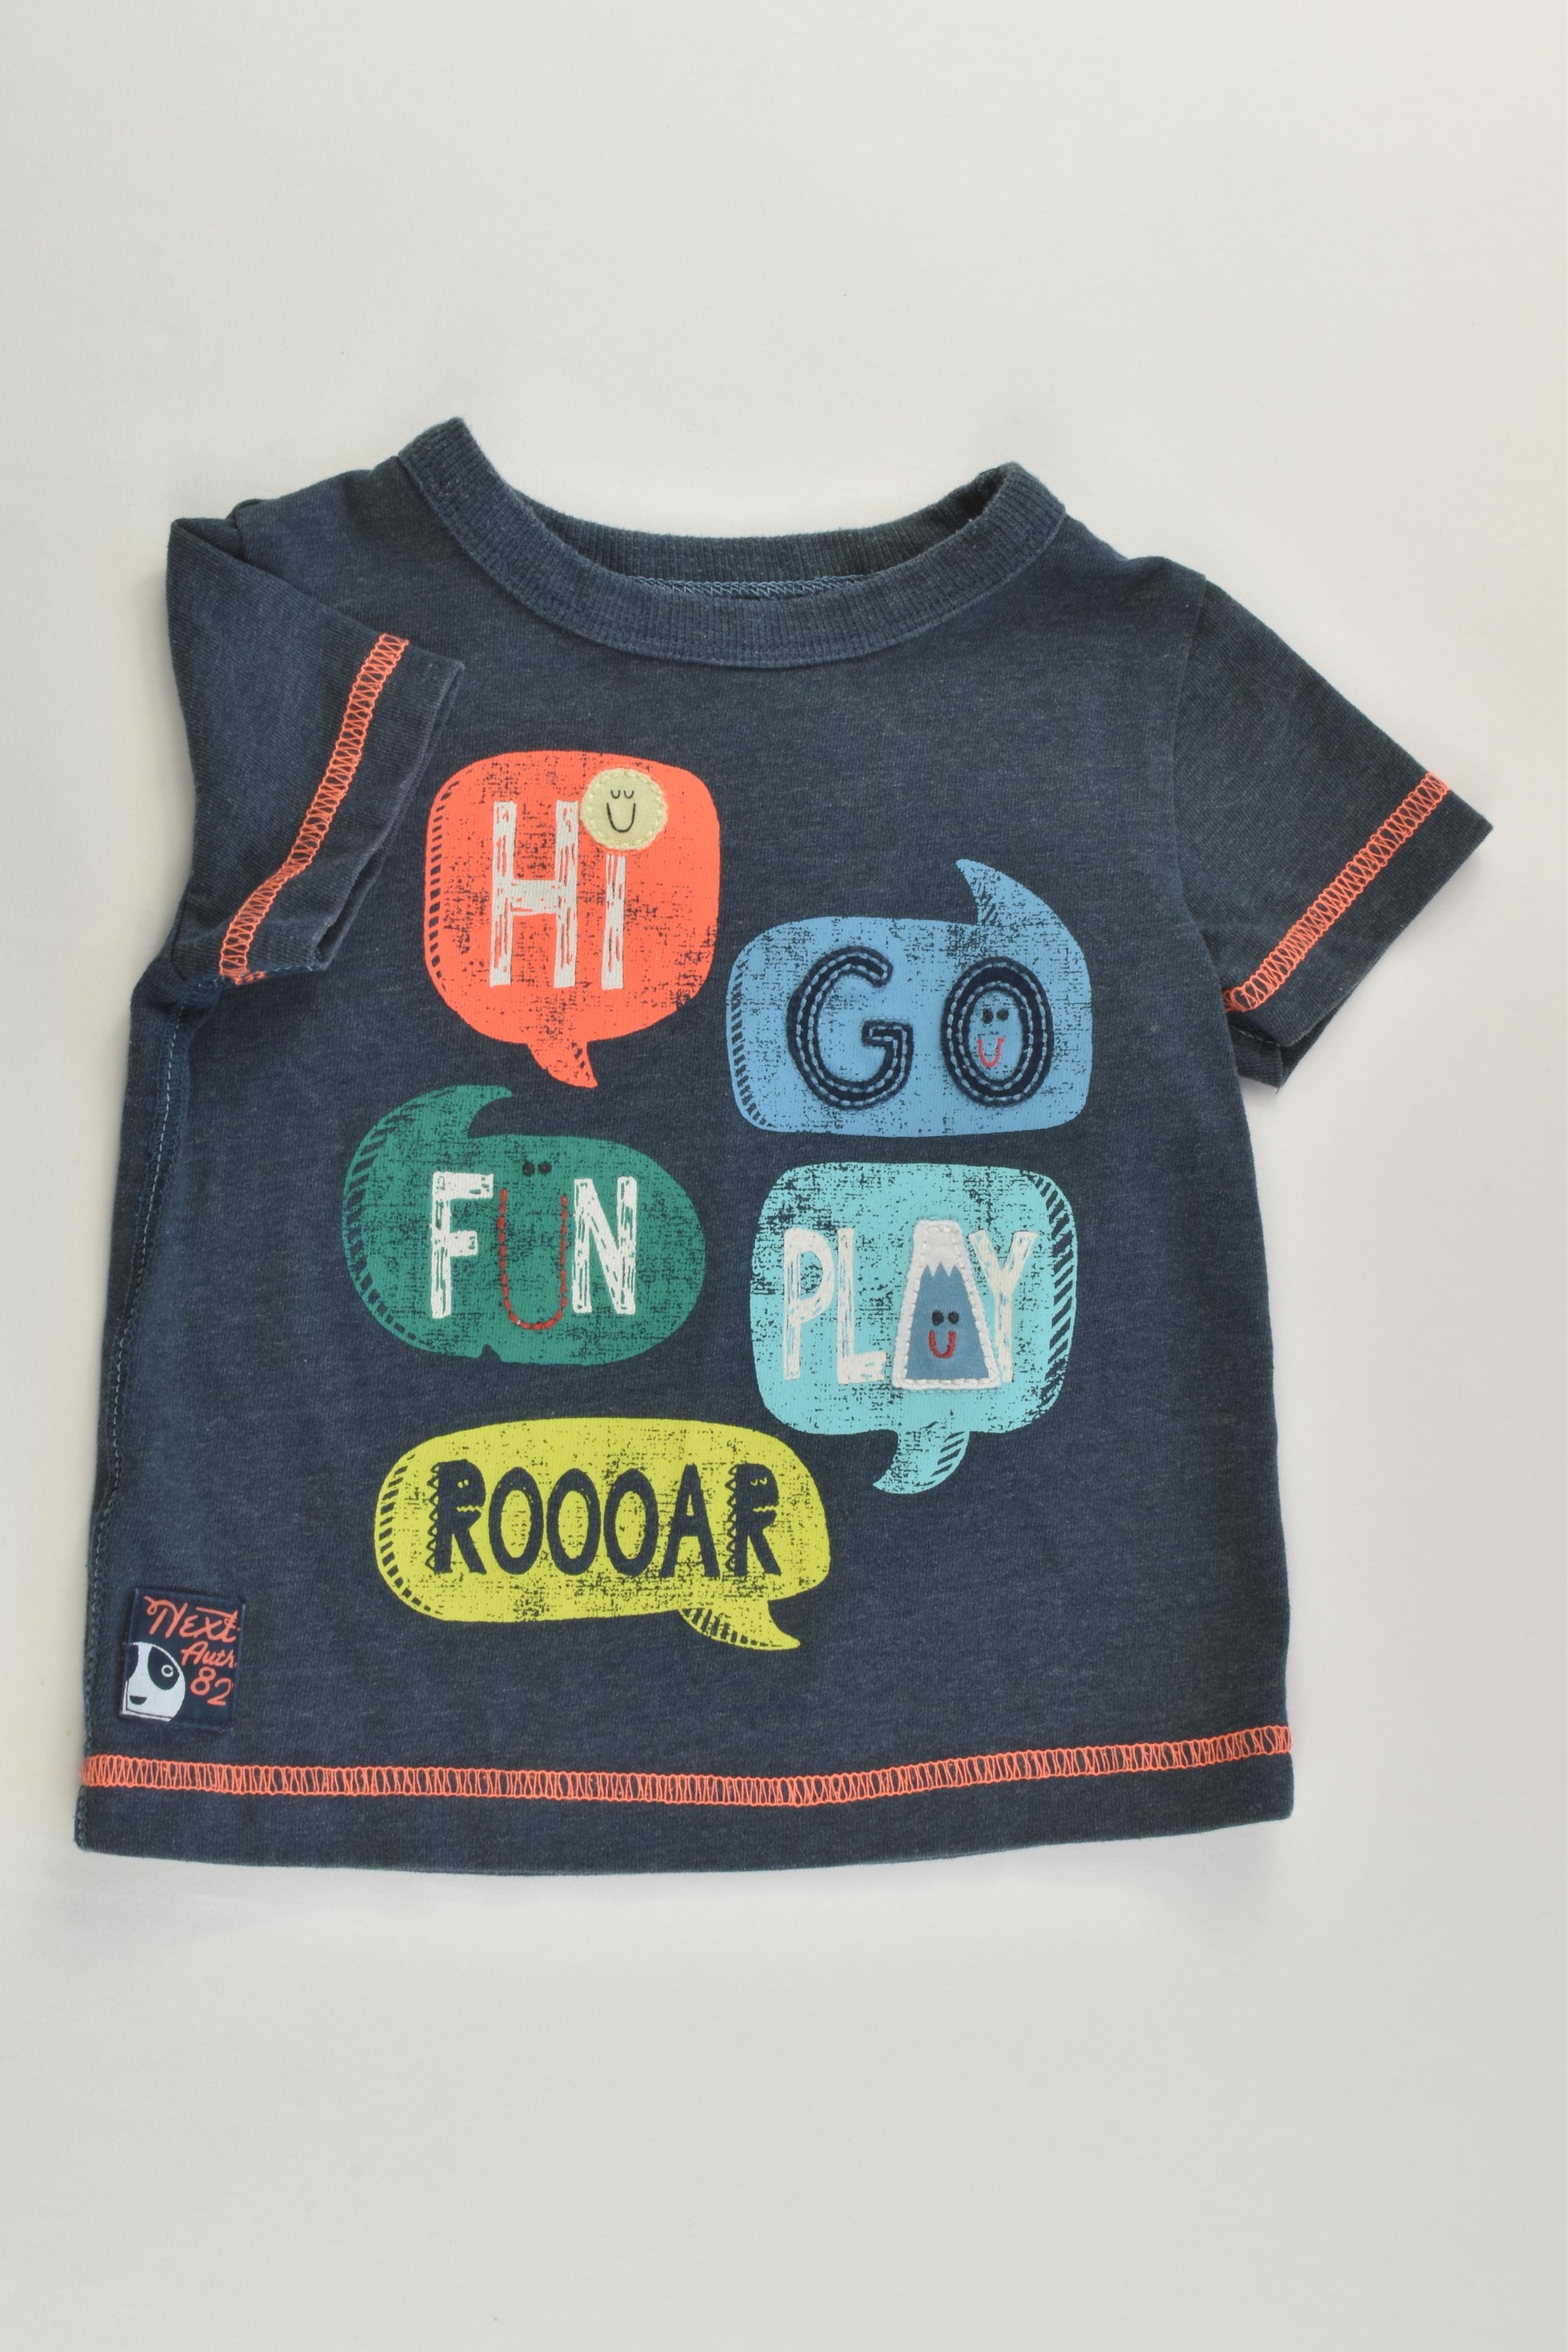 Next Size 00 (3-6 months) 'Hi, Go, Fun, Play, Roooar' T-shirt